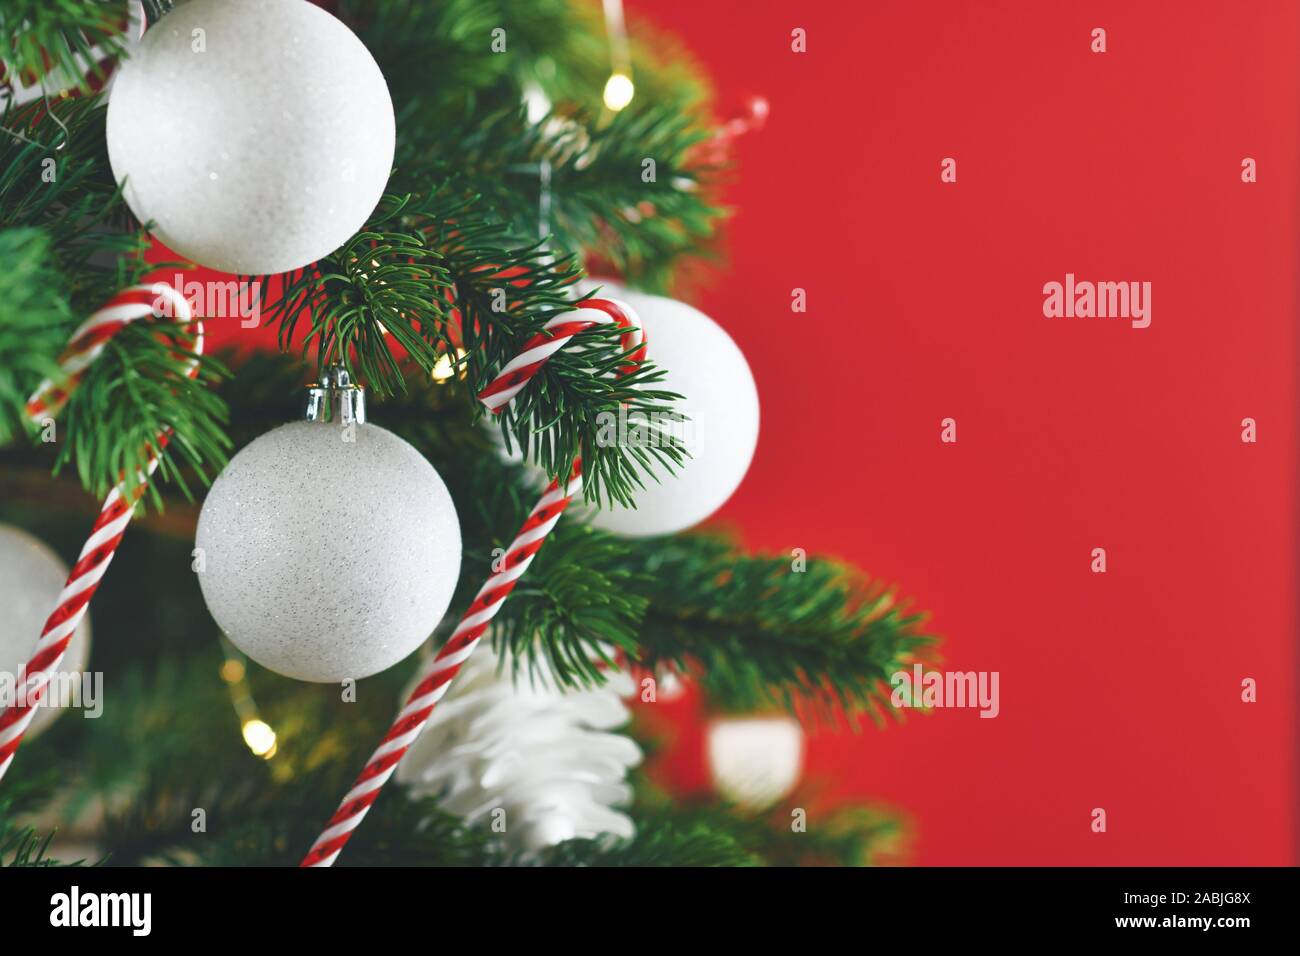 Nahaufnahme von geschmückten Weihnachtsbaum mit weißen und roten saisonale Baumschmuck wie Kugeln und Zuckerstangen auf rotem Hintergrund Stockfoto